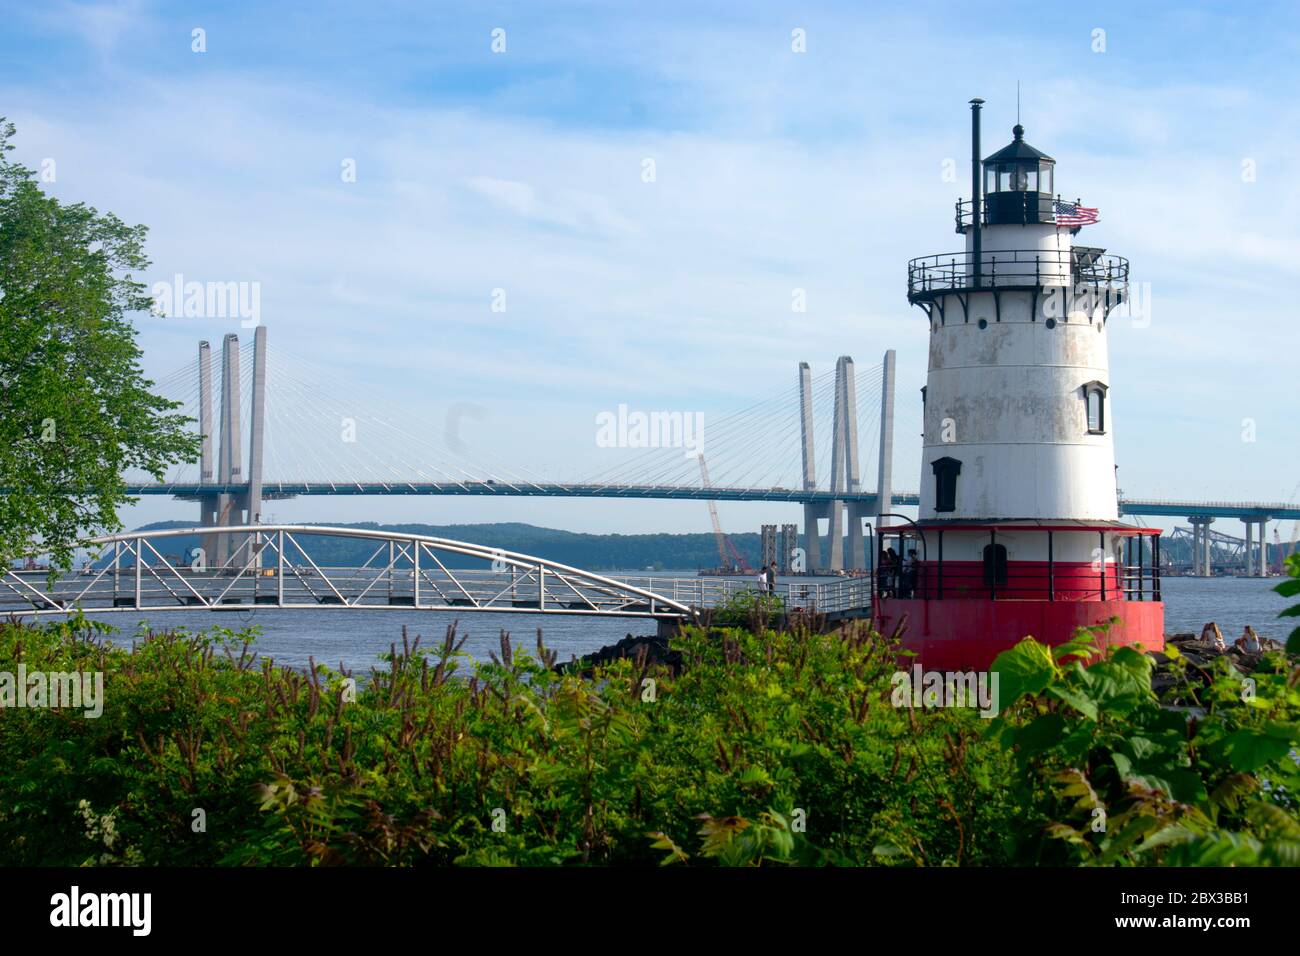 Faro corto, rosso e bianco situato nella contea di Westchester sul fiume Hudson con il ponte Tappan Zee ricostruito sullo sfondo. Foto Stock